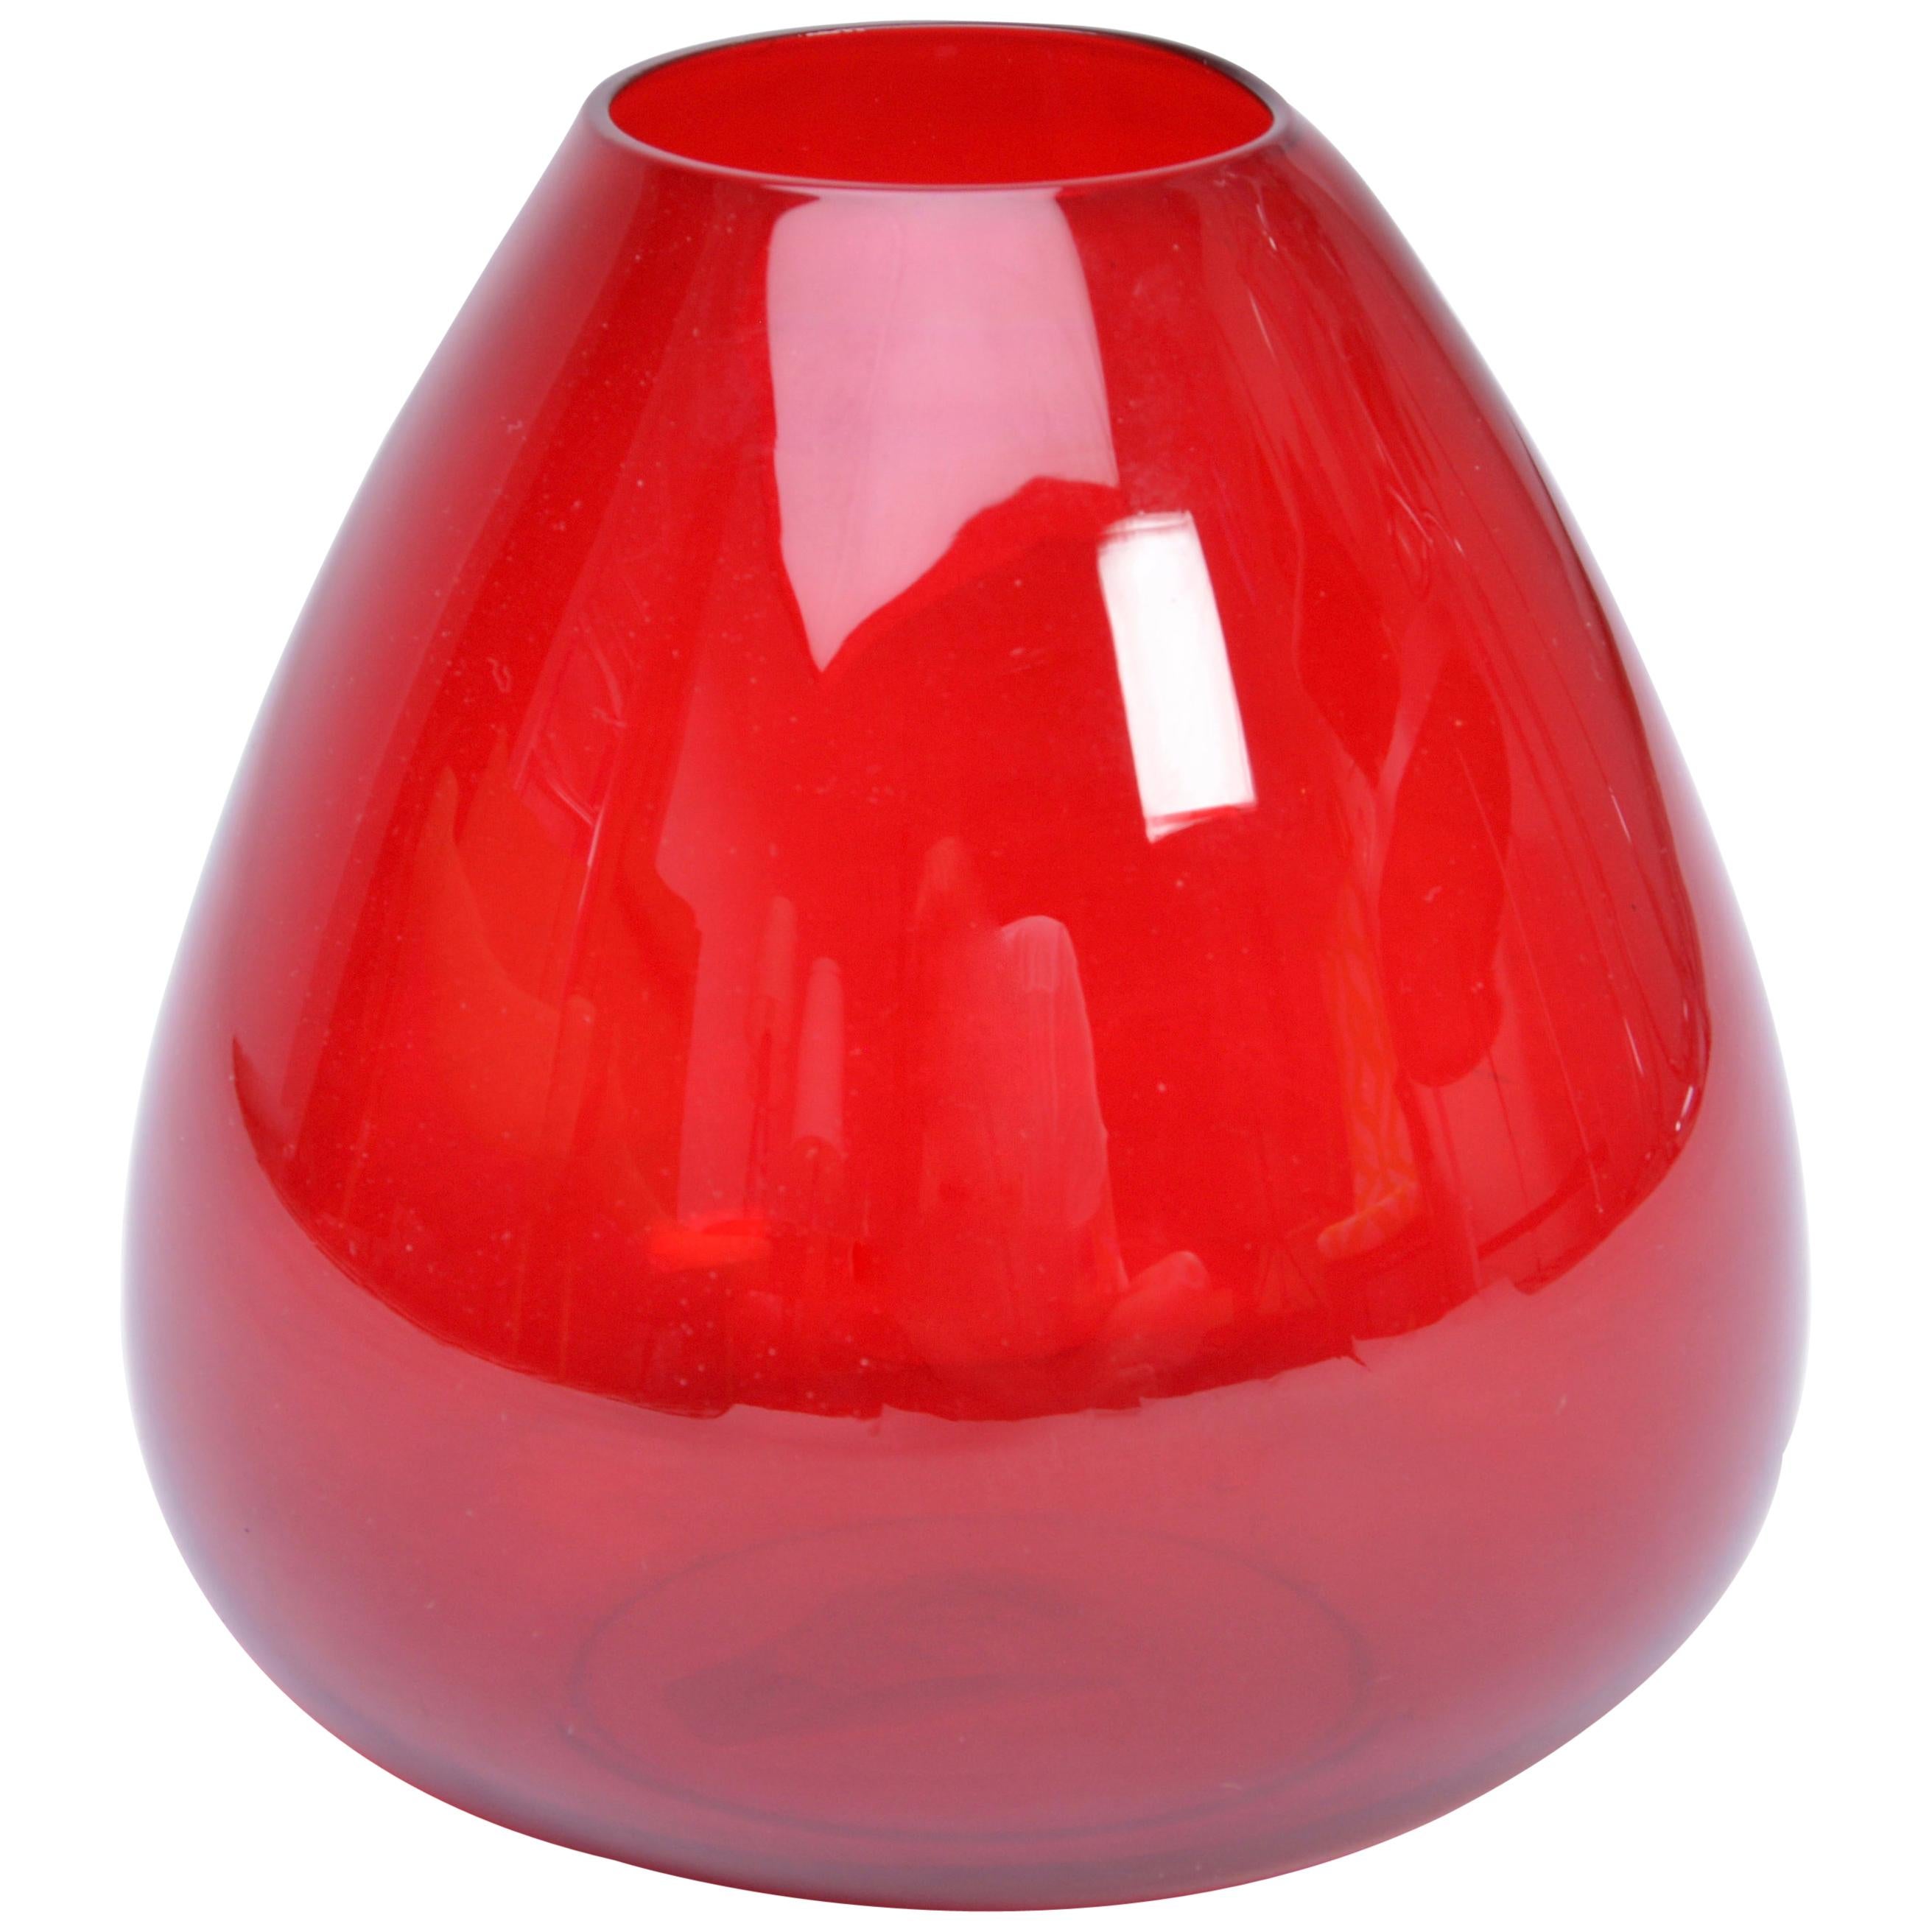 Vase aus rotem Glas aus der Serie Ruby:: entworfen von Per Lütken für Holmegaard:: 1957